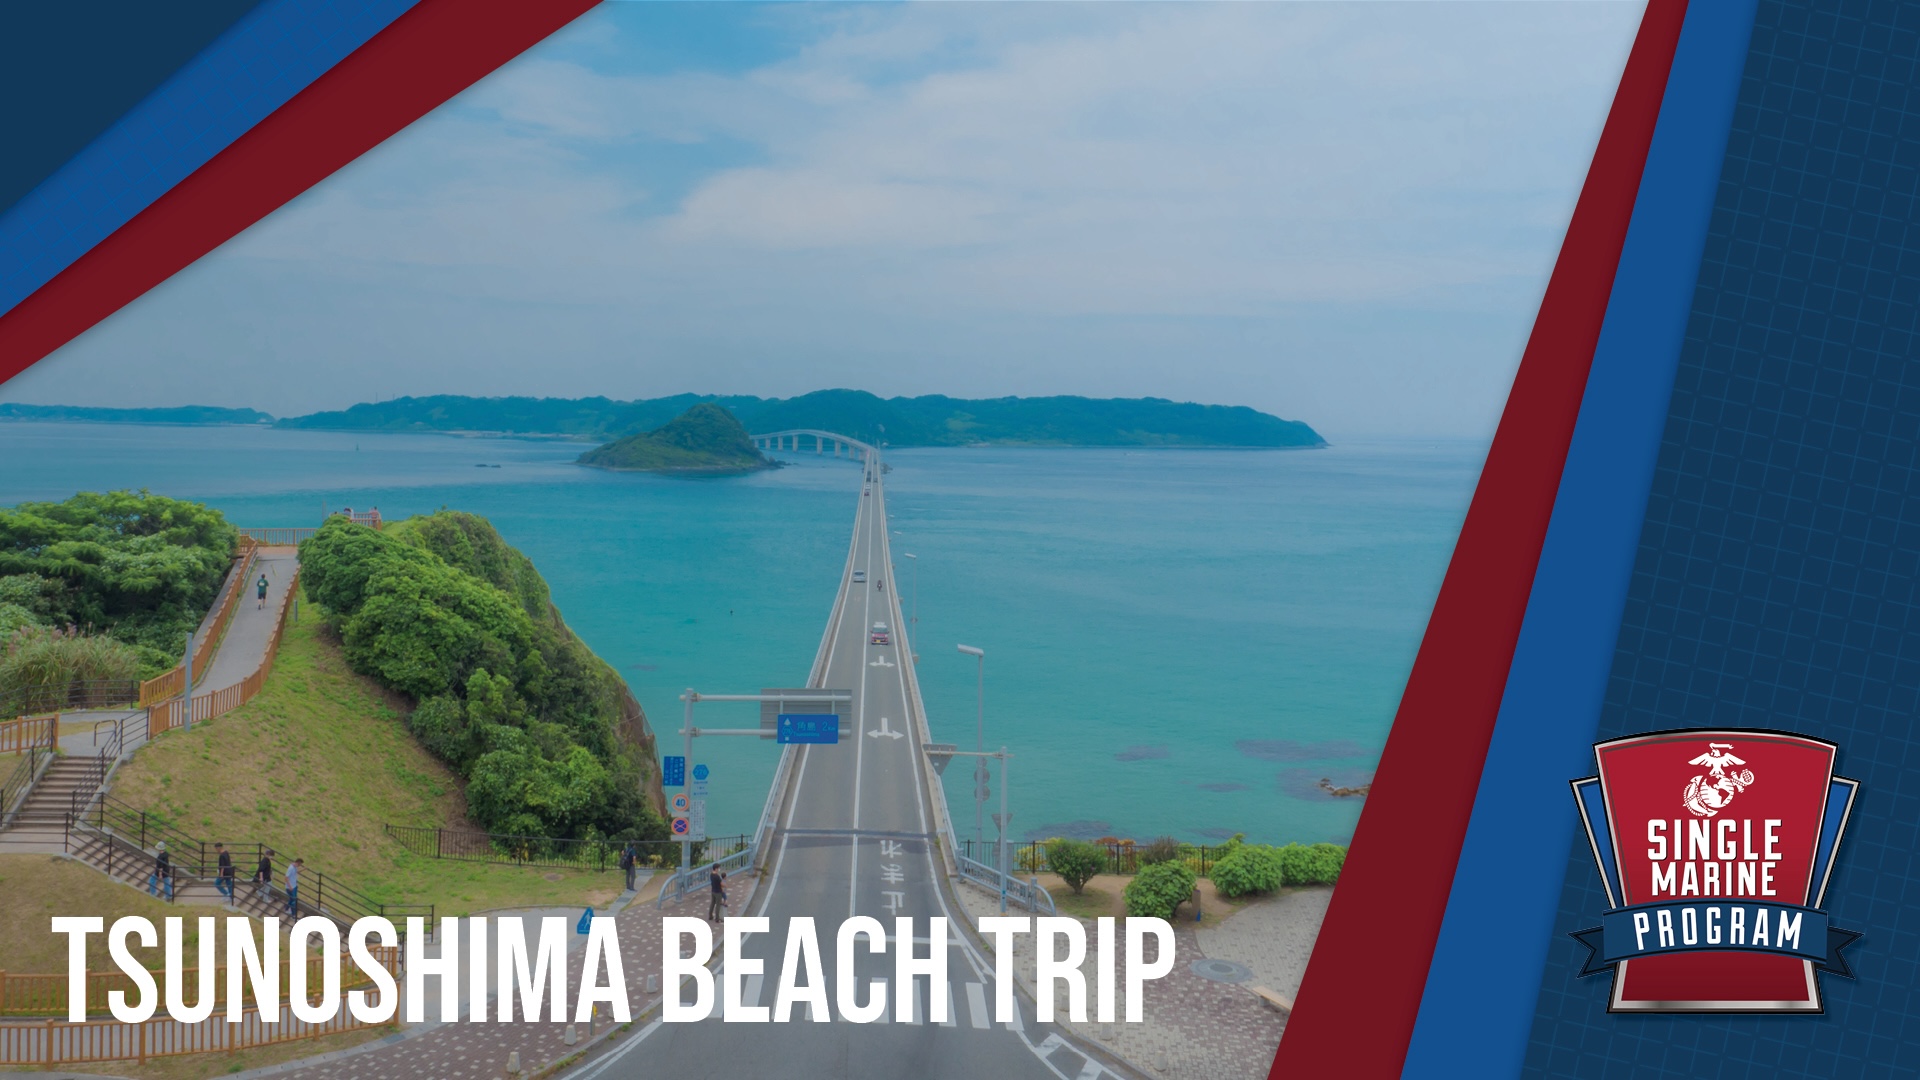 SMP - Tsunoshima Beach Trip